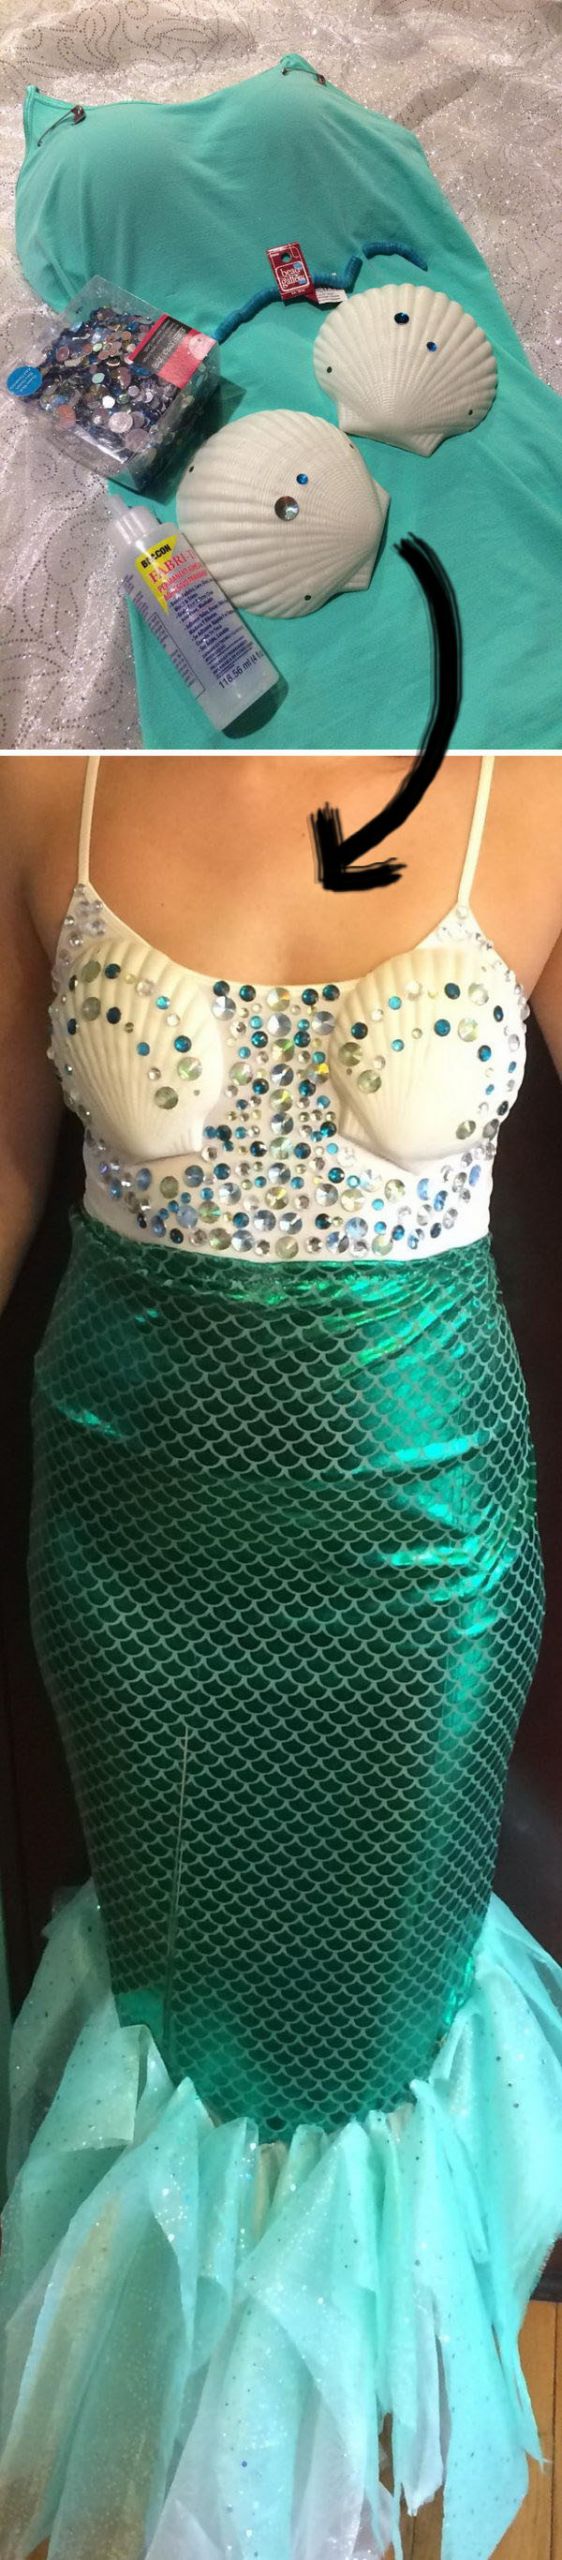 Mermaid DIY Costume
 25 Mermaid Costumes and DIY Ideas 2017